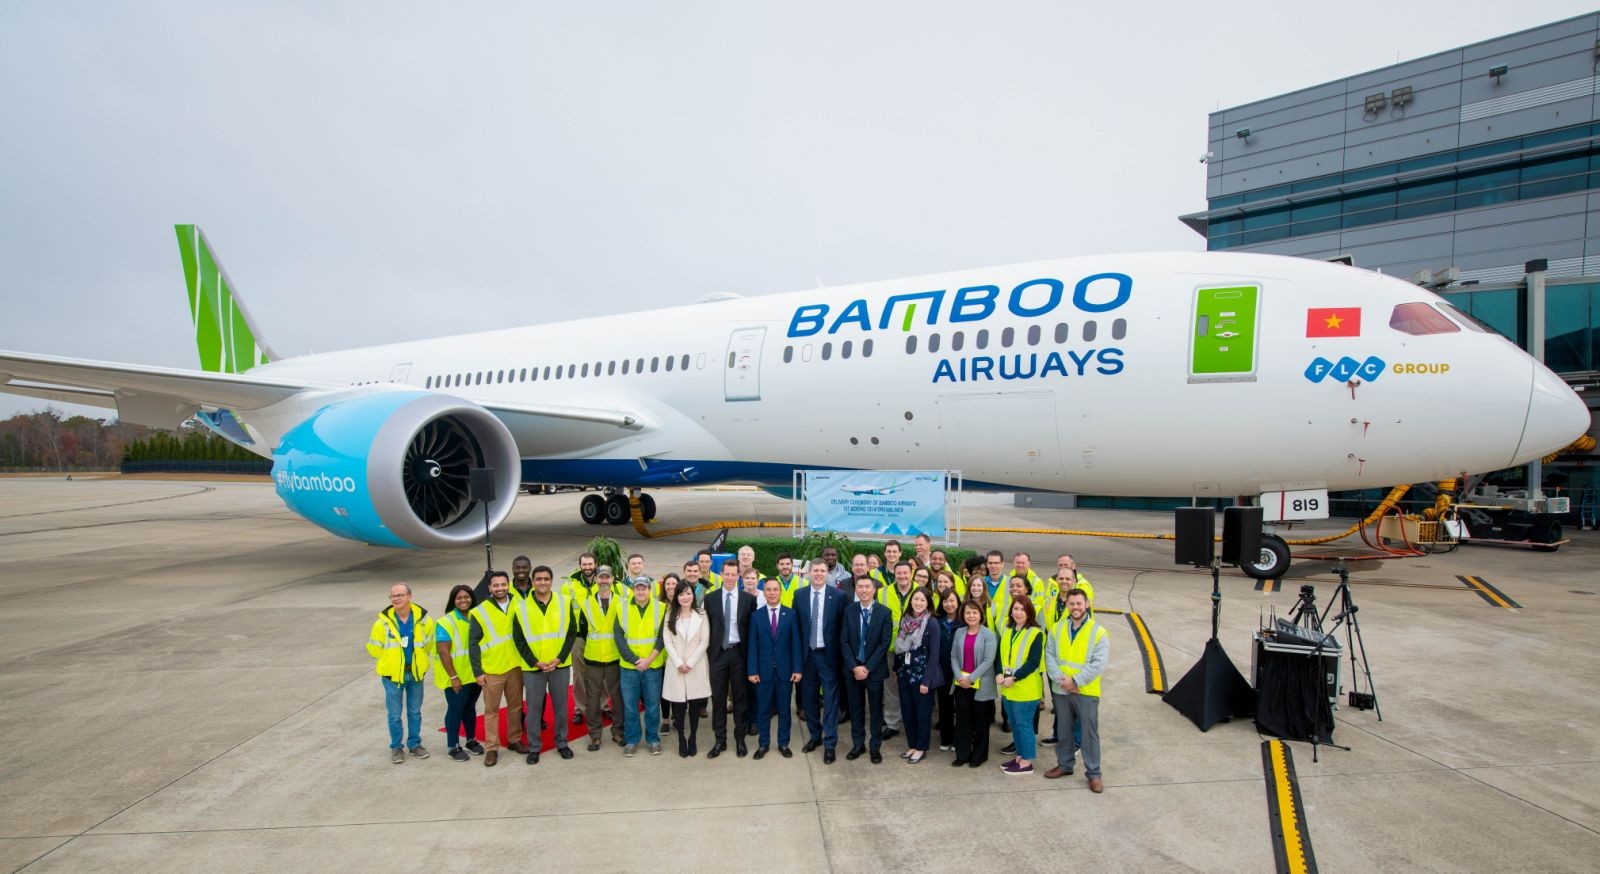 

Vị trí ghế nóng Tổng giám đốc Bamboo Airways được chuyển từ ông Đặng Tất Thắng sang ông Nguyễn Mạnh Quân sẽ giúp cho hãng hàng không này có thêm một nhân sự chủ chốt cũng như kiện toàn bộ máy nhân sự quản lý cấp cao
